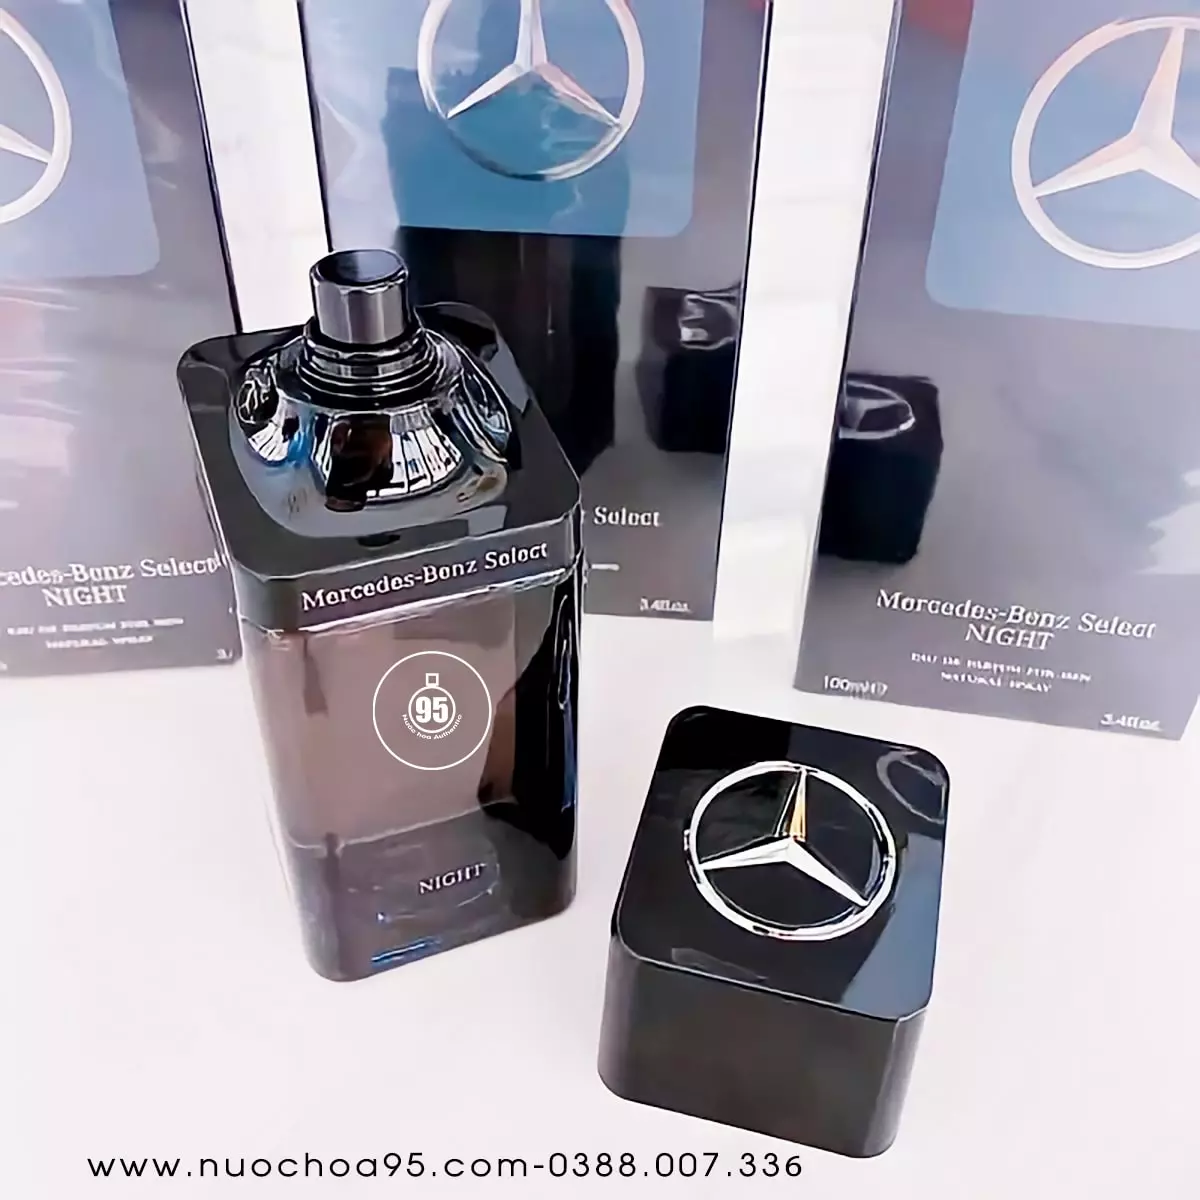 Nước hoa Mercedes-Benz Select Night - Ảnh 3